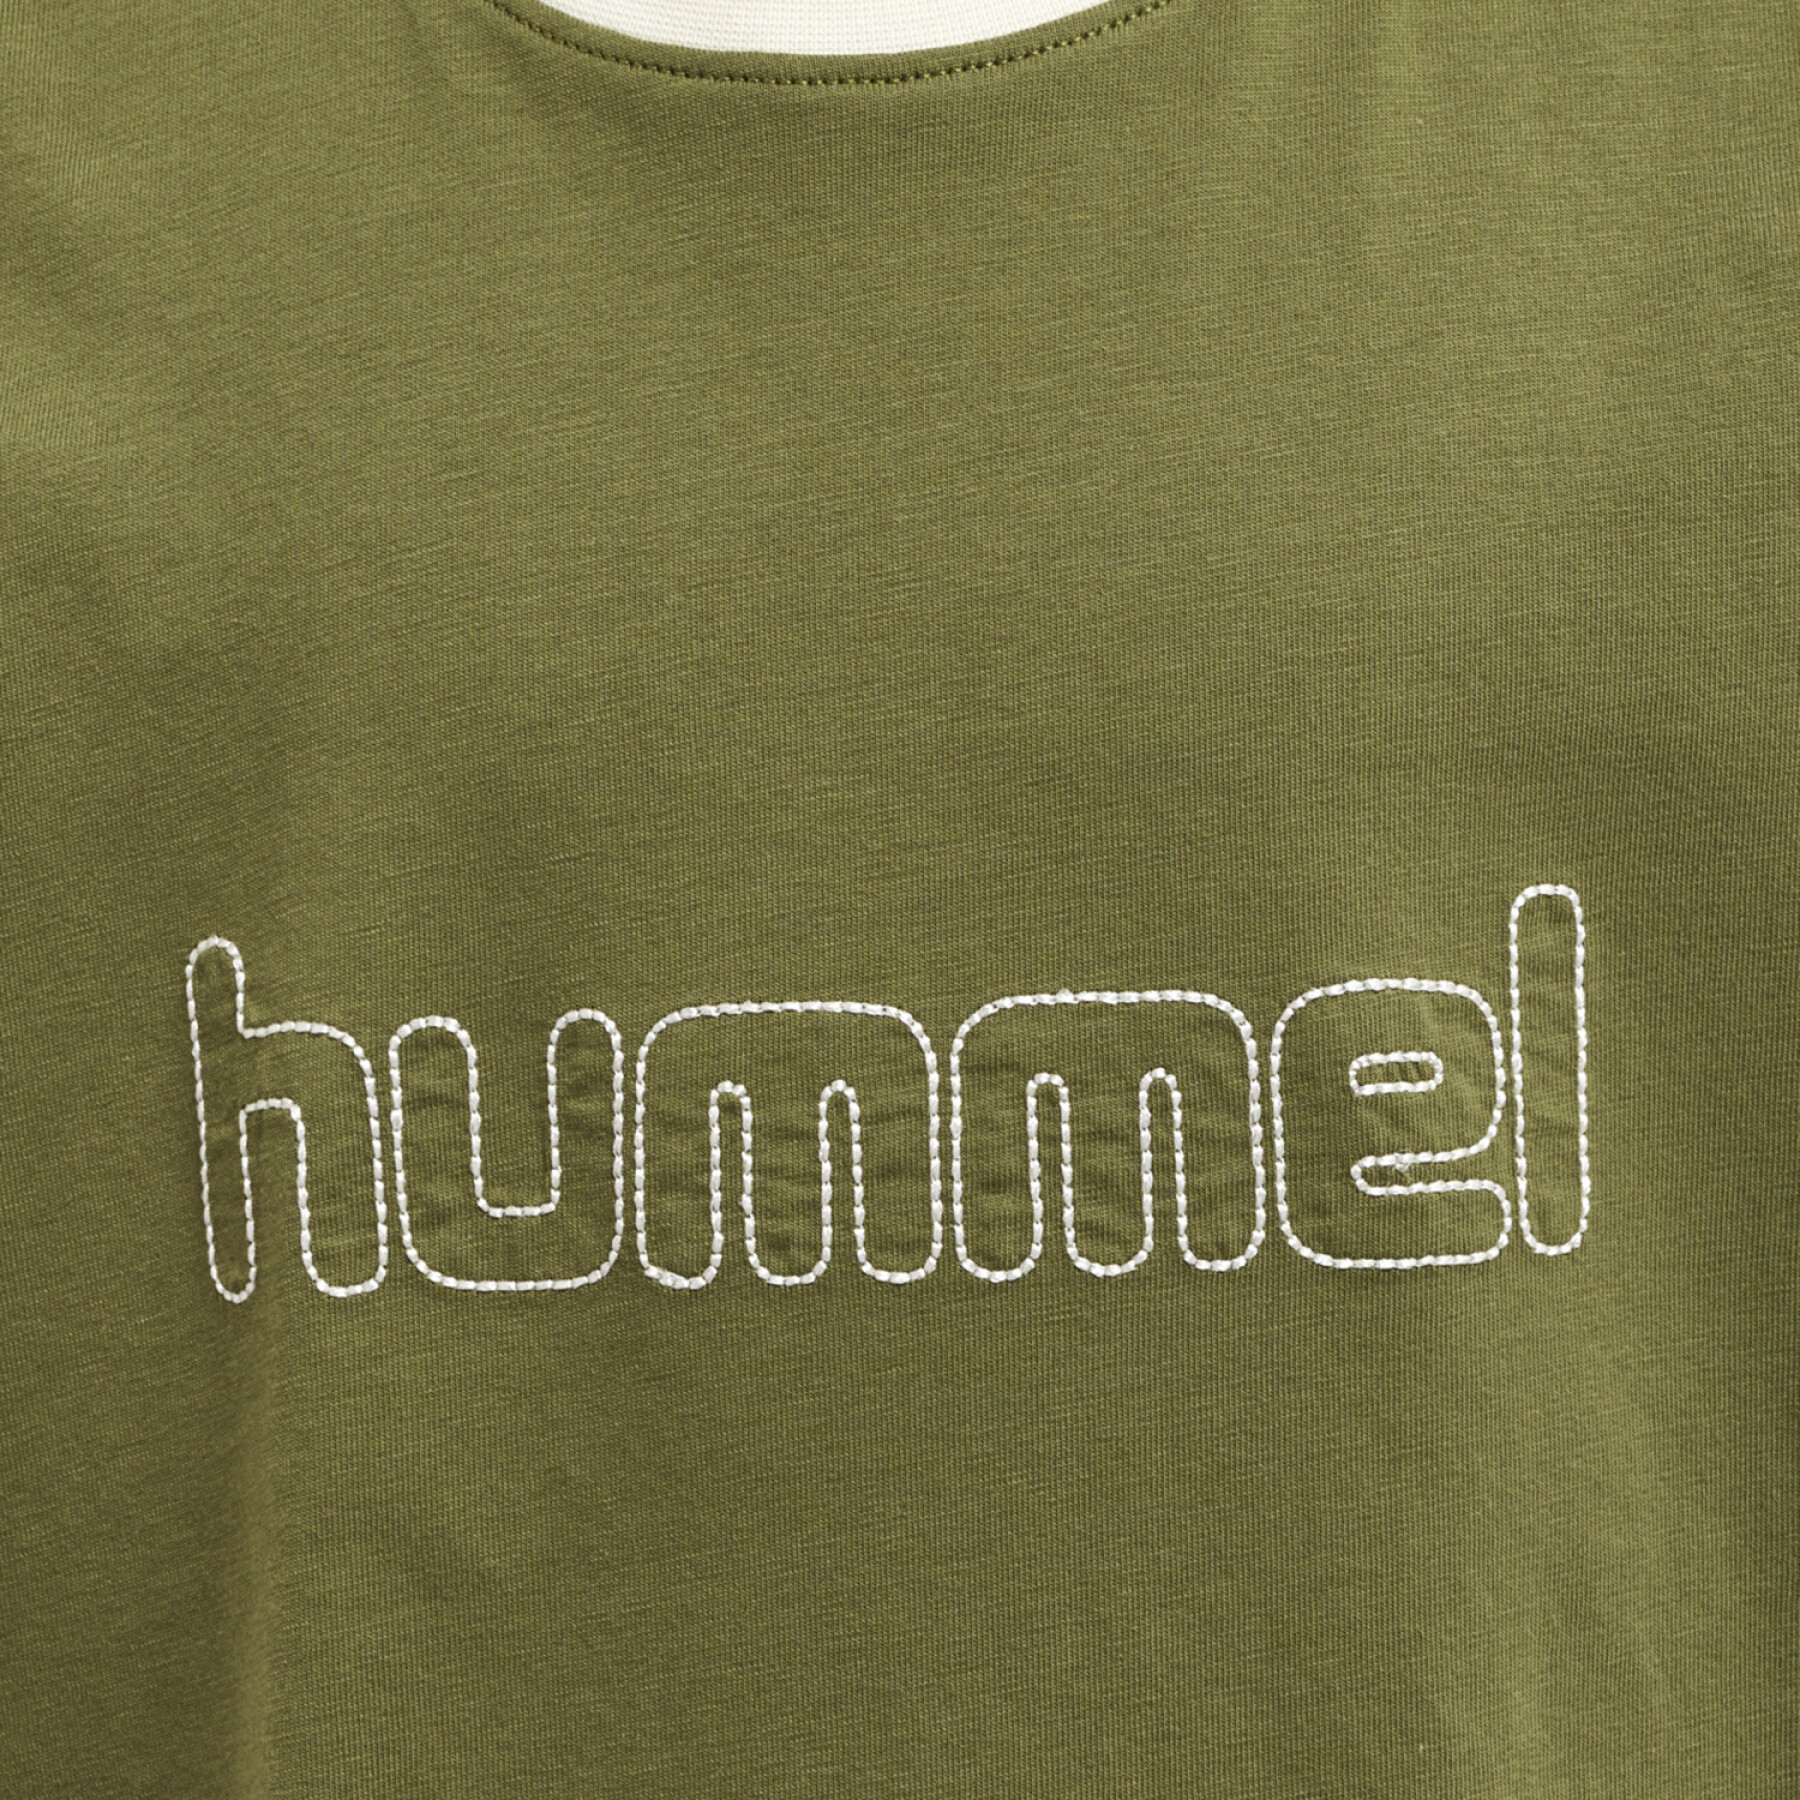 Long sleeve T-shirt Hummel Cloud